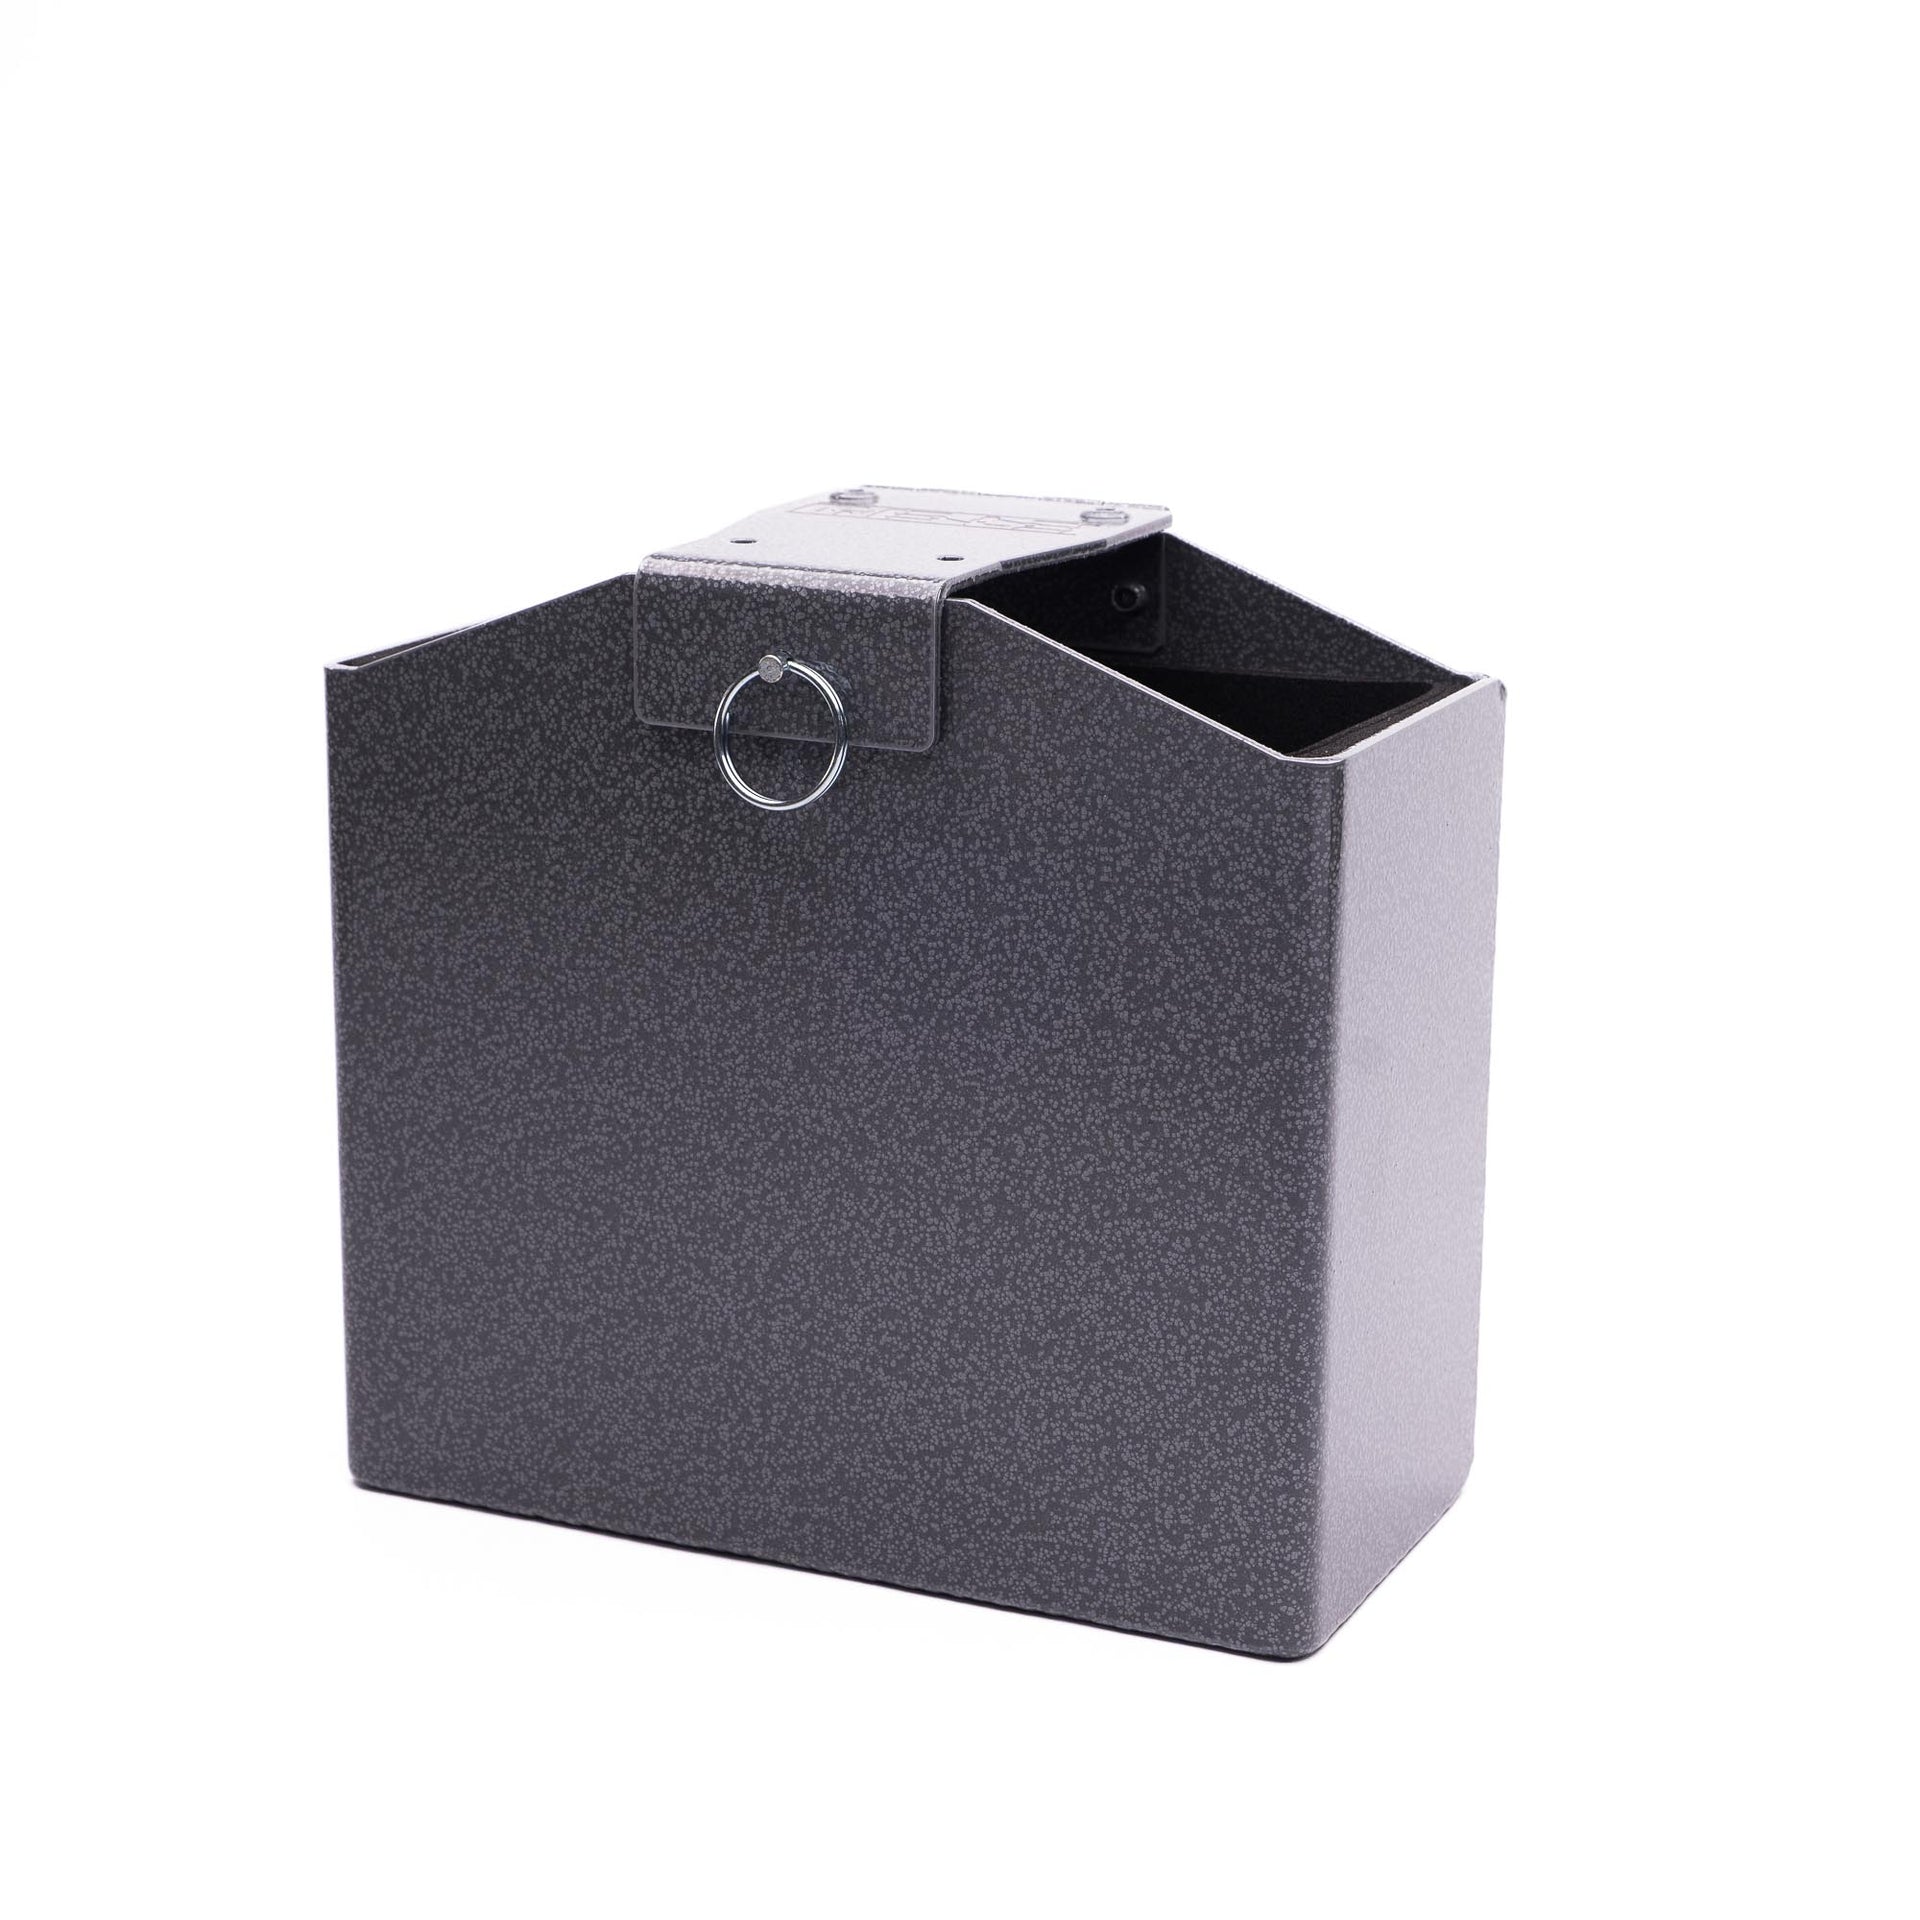 Mele Design Firm Lightweight Battery Box, 2015+ wrx lightweight battery  box, 2015+ sti battery box, 2005-2009 Legacy GT, Ford Focus ST, Ford Focus  RS, Track battery box, Lightweight Battery Box, Mele Design